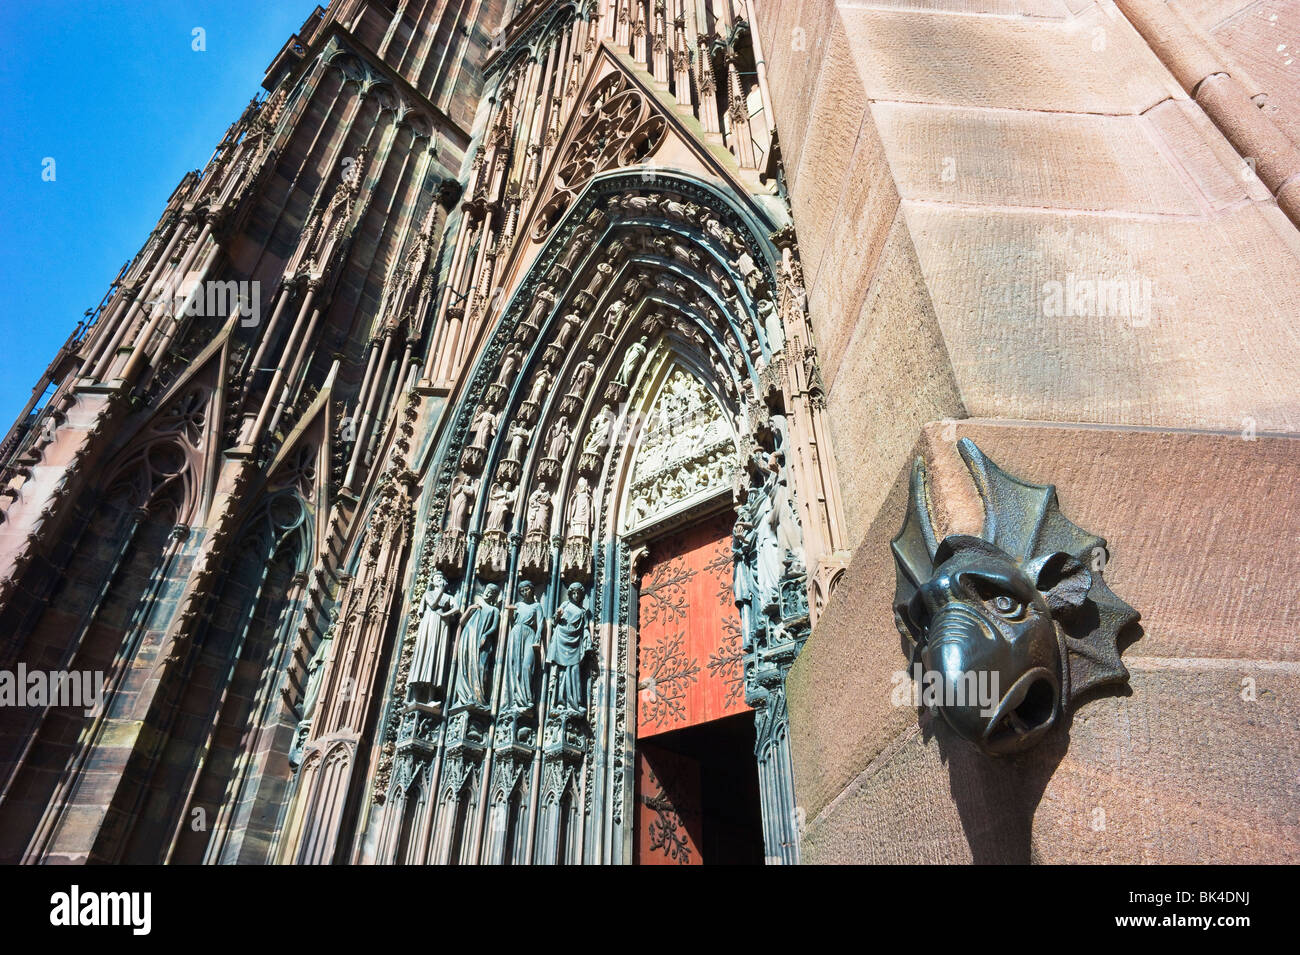 Strasbourg cathédrale gothique Notre-Dame, 14e siècle, chimera à droite portail, tympan, Alsace, France, Europe, Banque D'Images